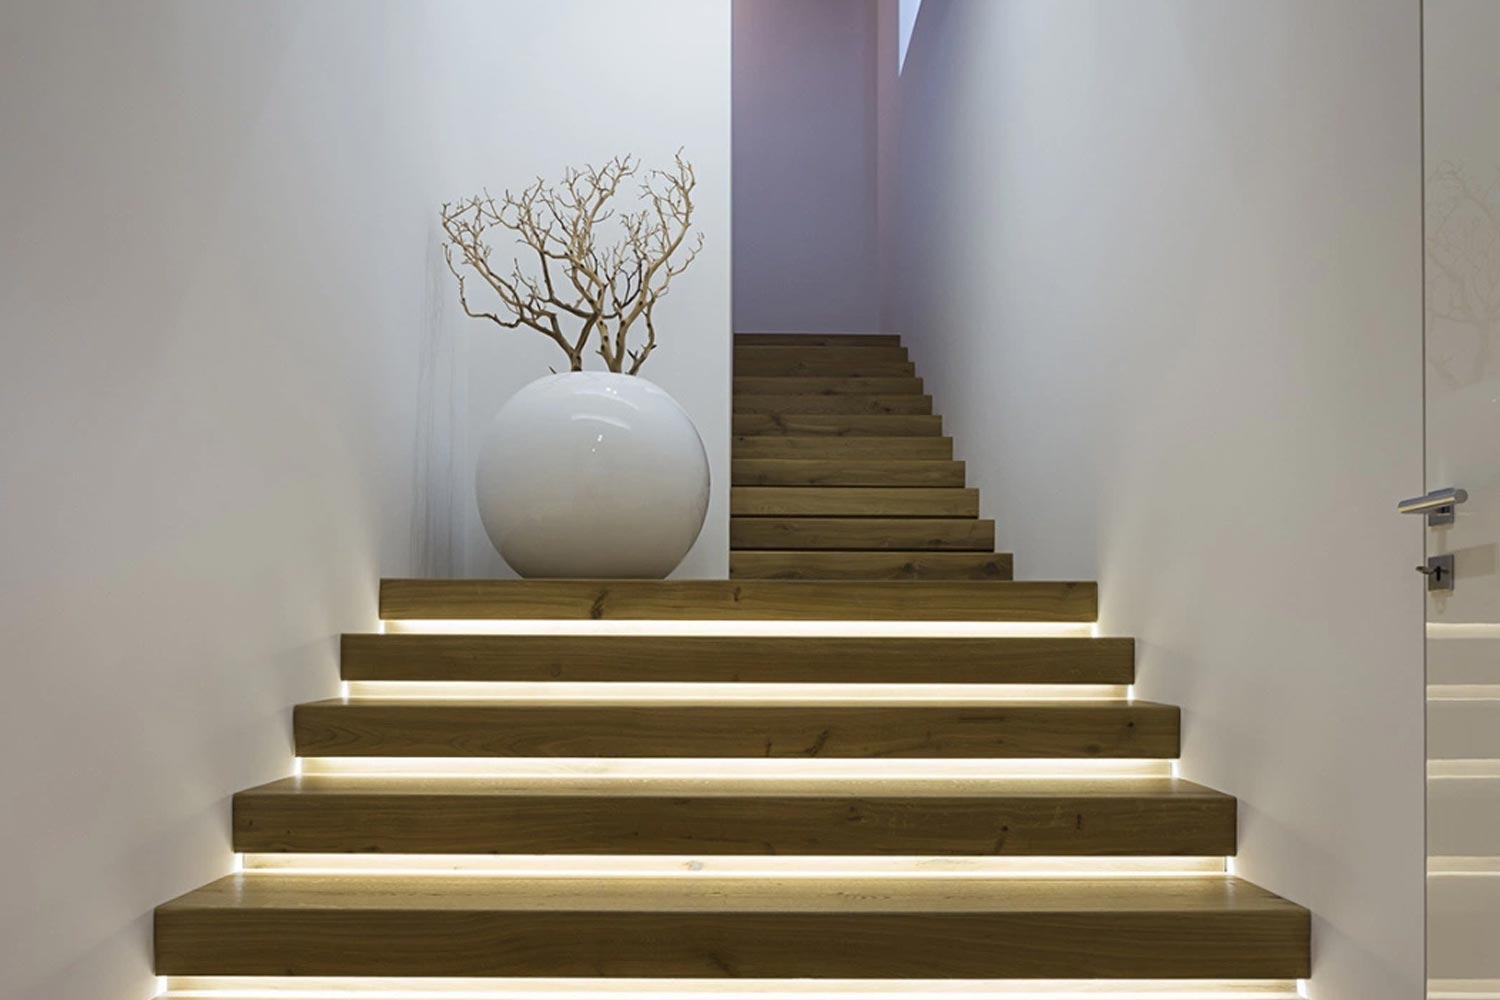 ᐅ 3 Ventajas de la iluminación led para escaleras interiores - 3